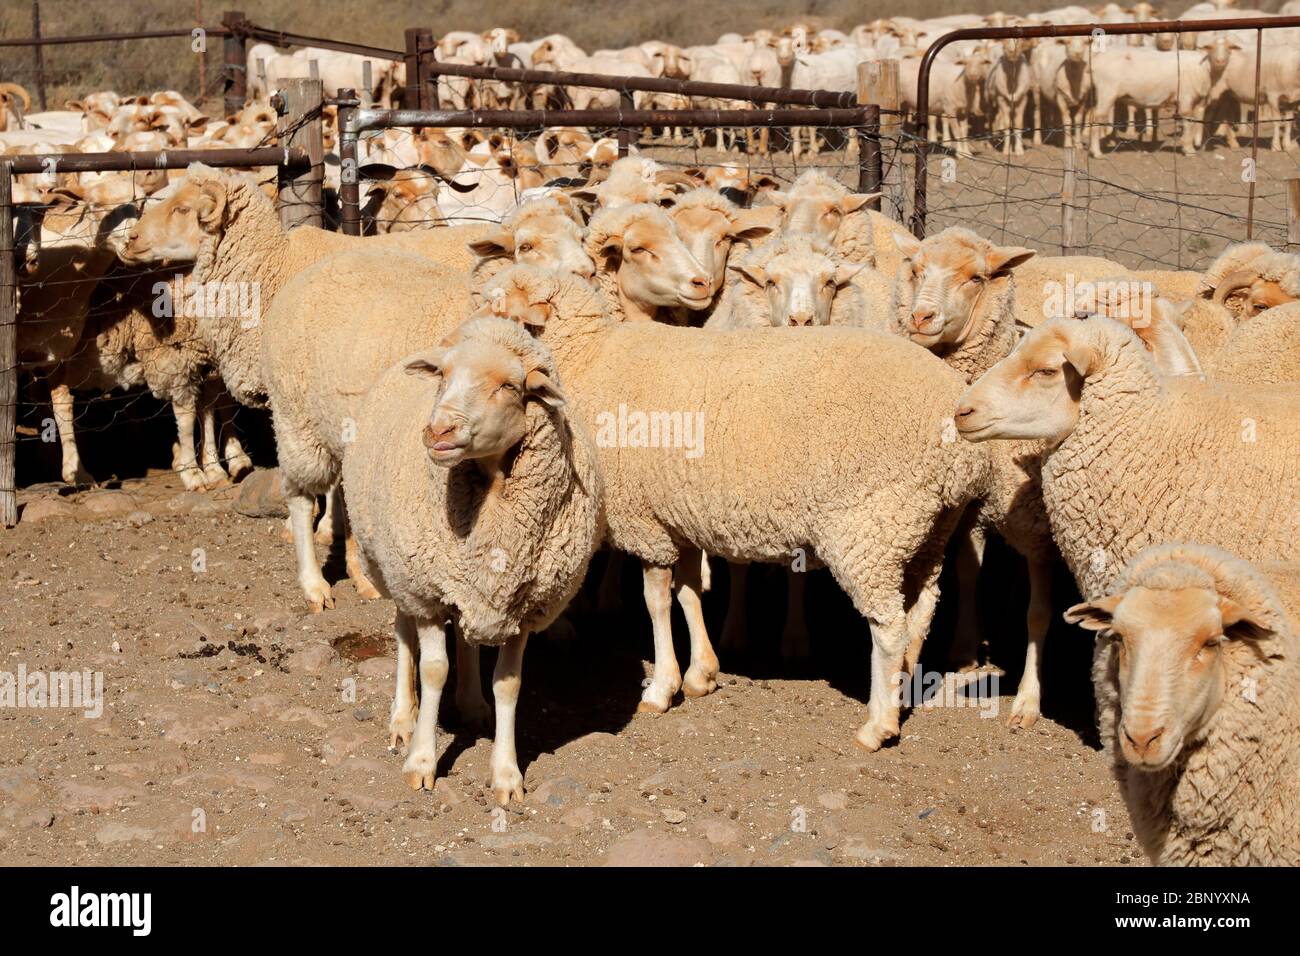 Moutons Merino dans un enclos dans une ferme rurale sud-africaine Banque D'Images